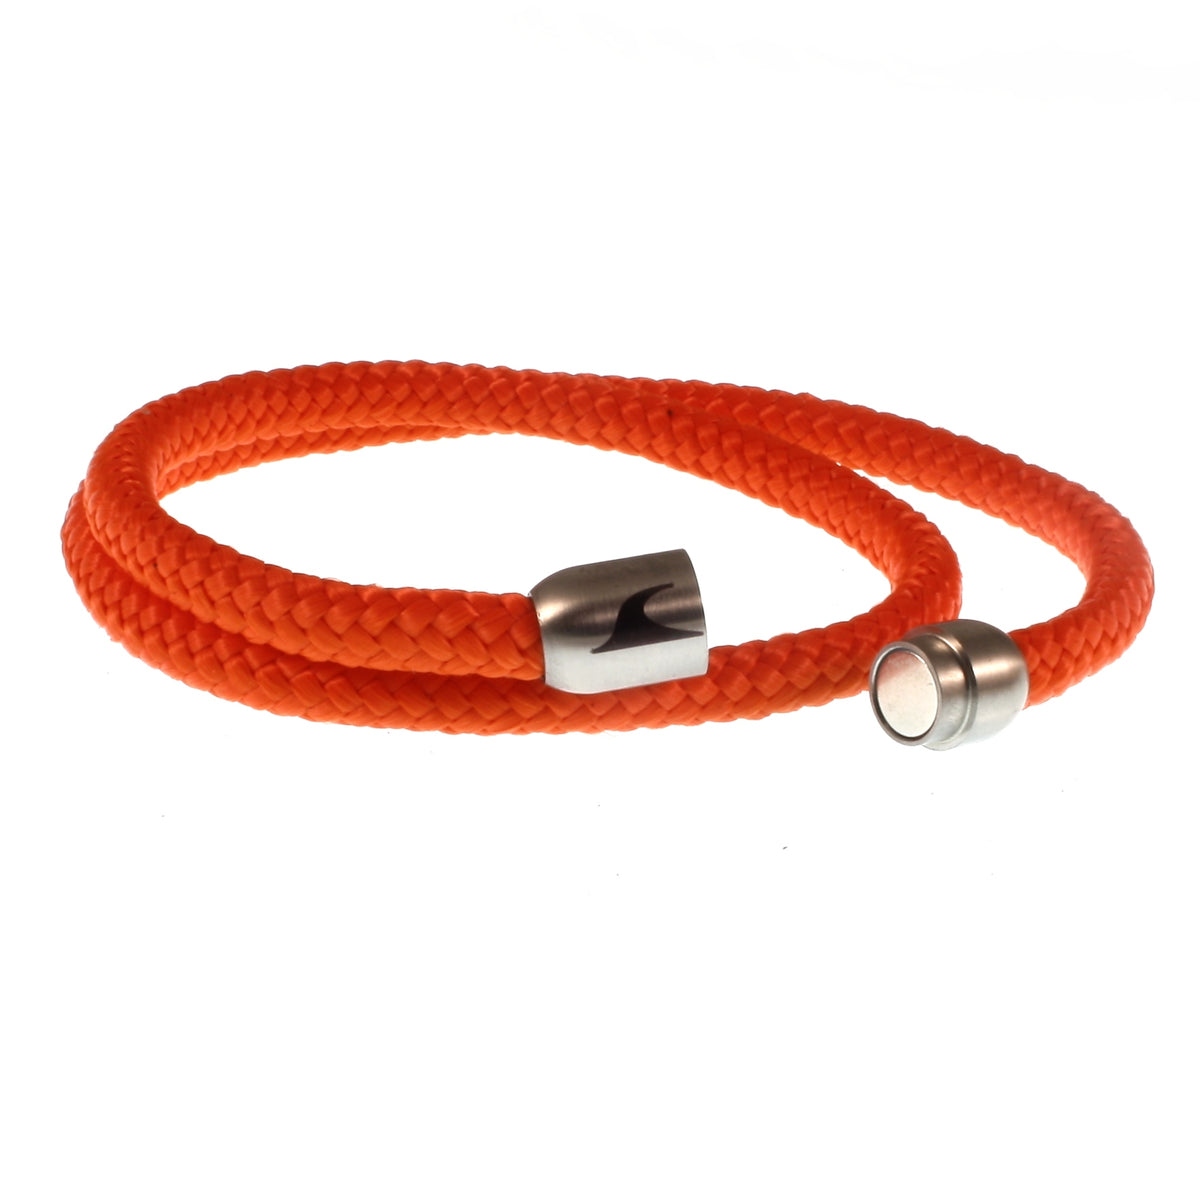 Herren-Segeltau-Armband-damen-hawaii-orange-silber-Edelstahlverschluss-offen-wavepirate-shop-st